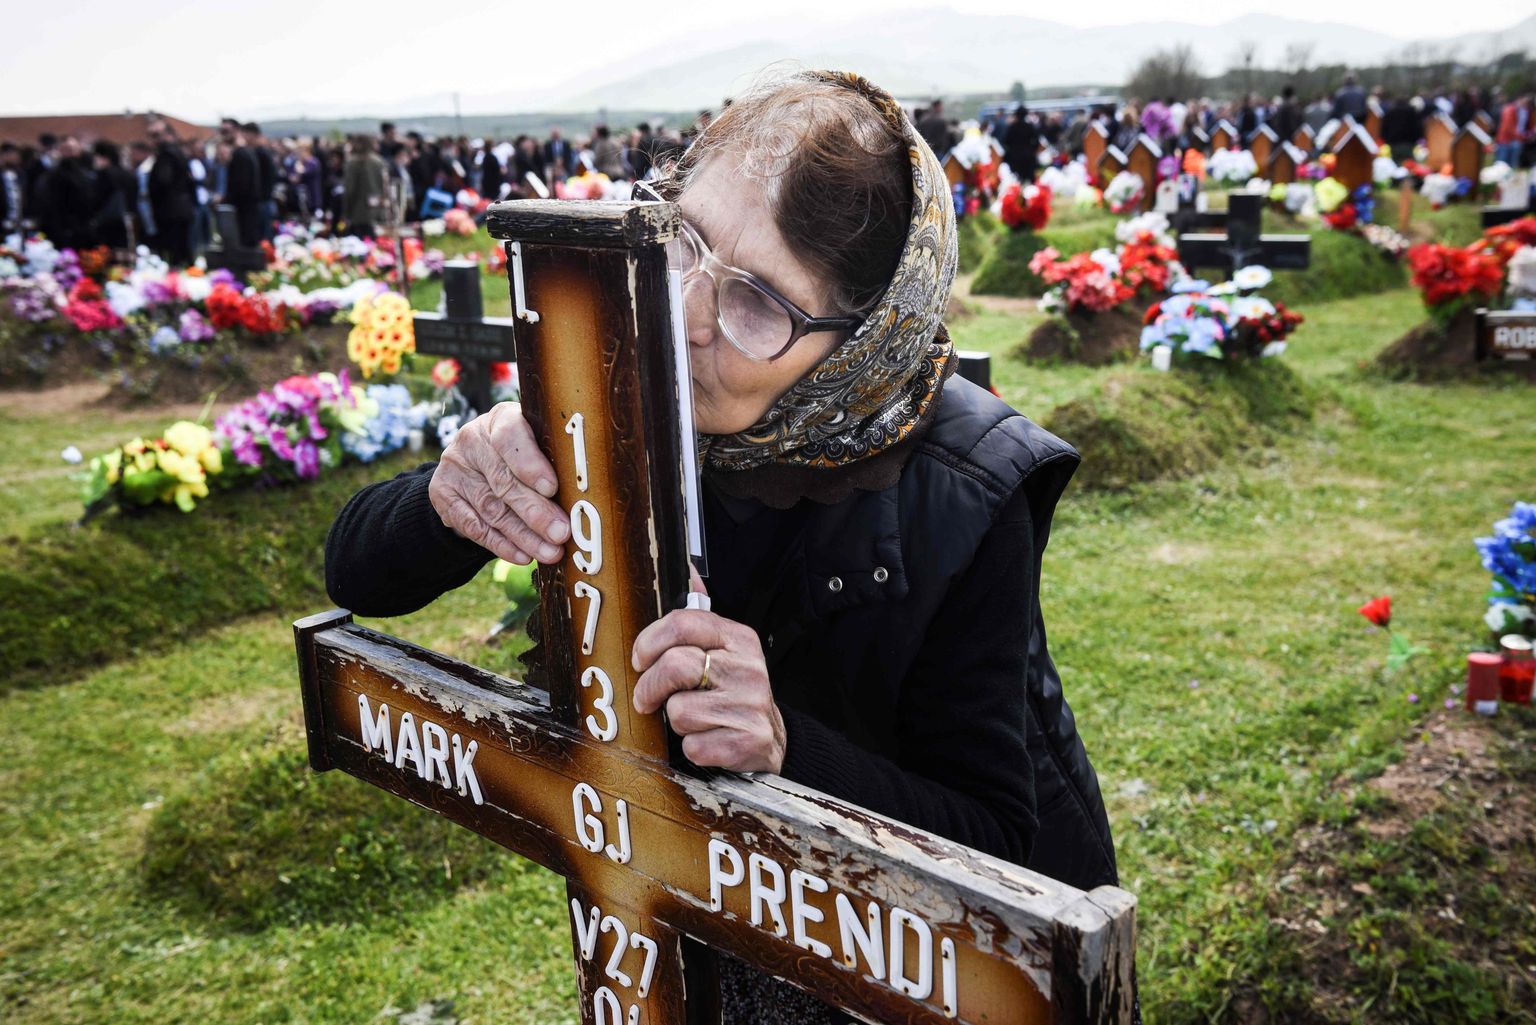 Kosovos tähistatakse Kadunud Inimeste päeva, sest 1600 inimest on sõjast saadik jätkuvalt kadunud. Enamik neist on albaanlased. Pildil naine sugulaste haual risti suudlemas.